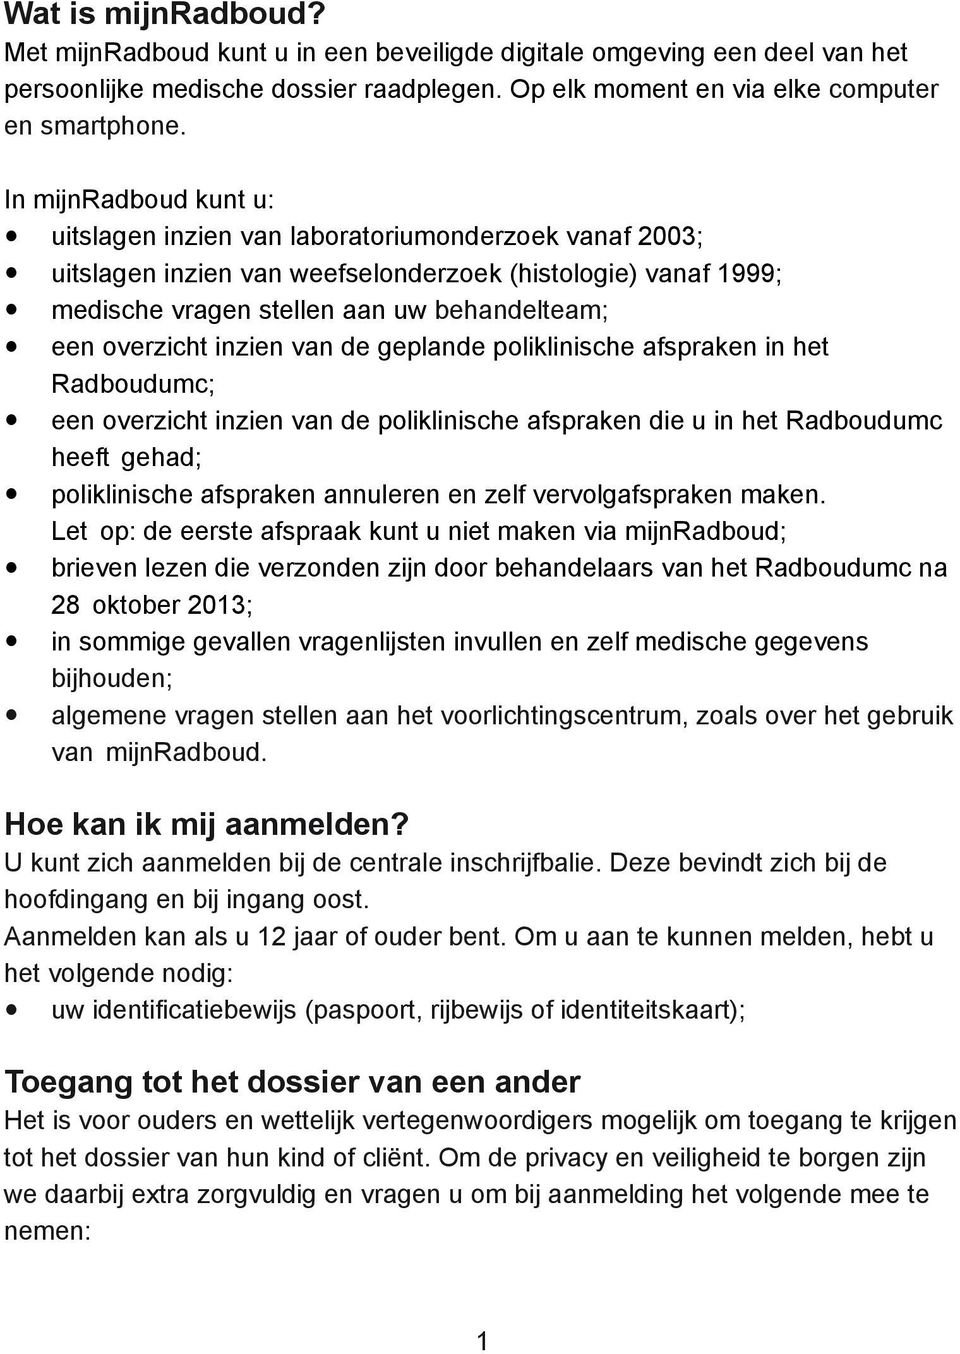 inzien van de geplande poliklinische afspraken in het Radboudumc; een overzicht inzien van de poliklinische afspraken die u in het Radboudumc heeft gehad; poliklinische afspraken annuleren en zelf